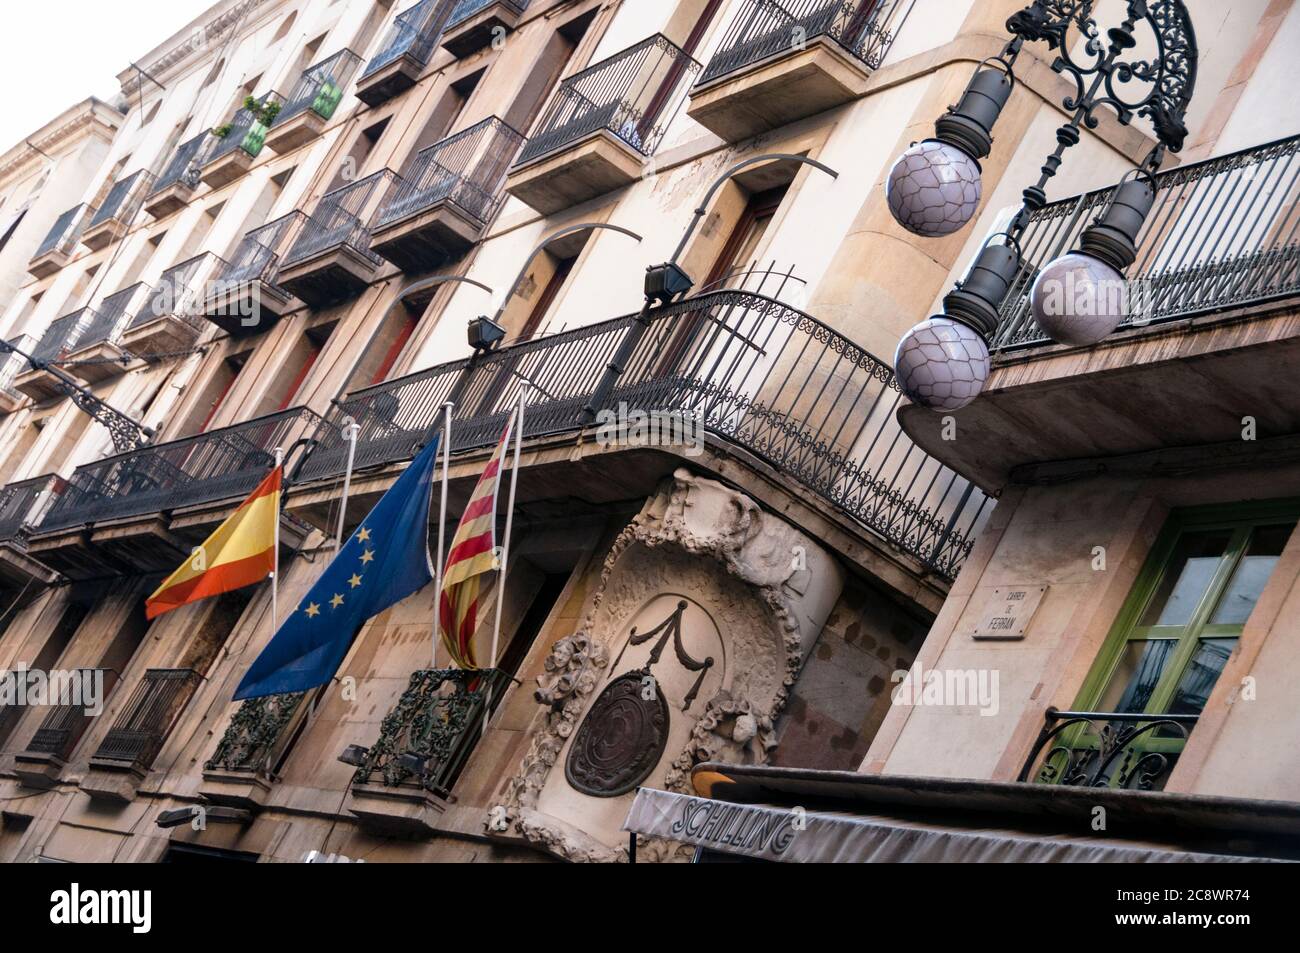 Bari quartiere gotico di Barcellona, Spagna. Foto Stock